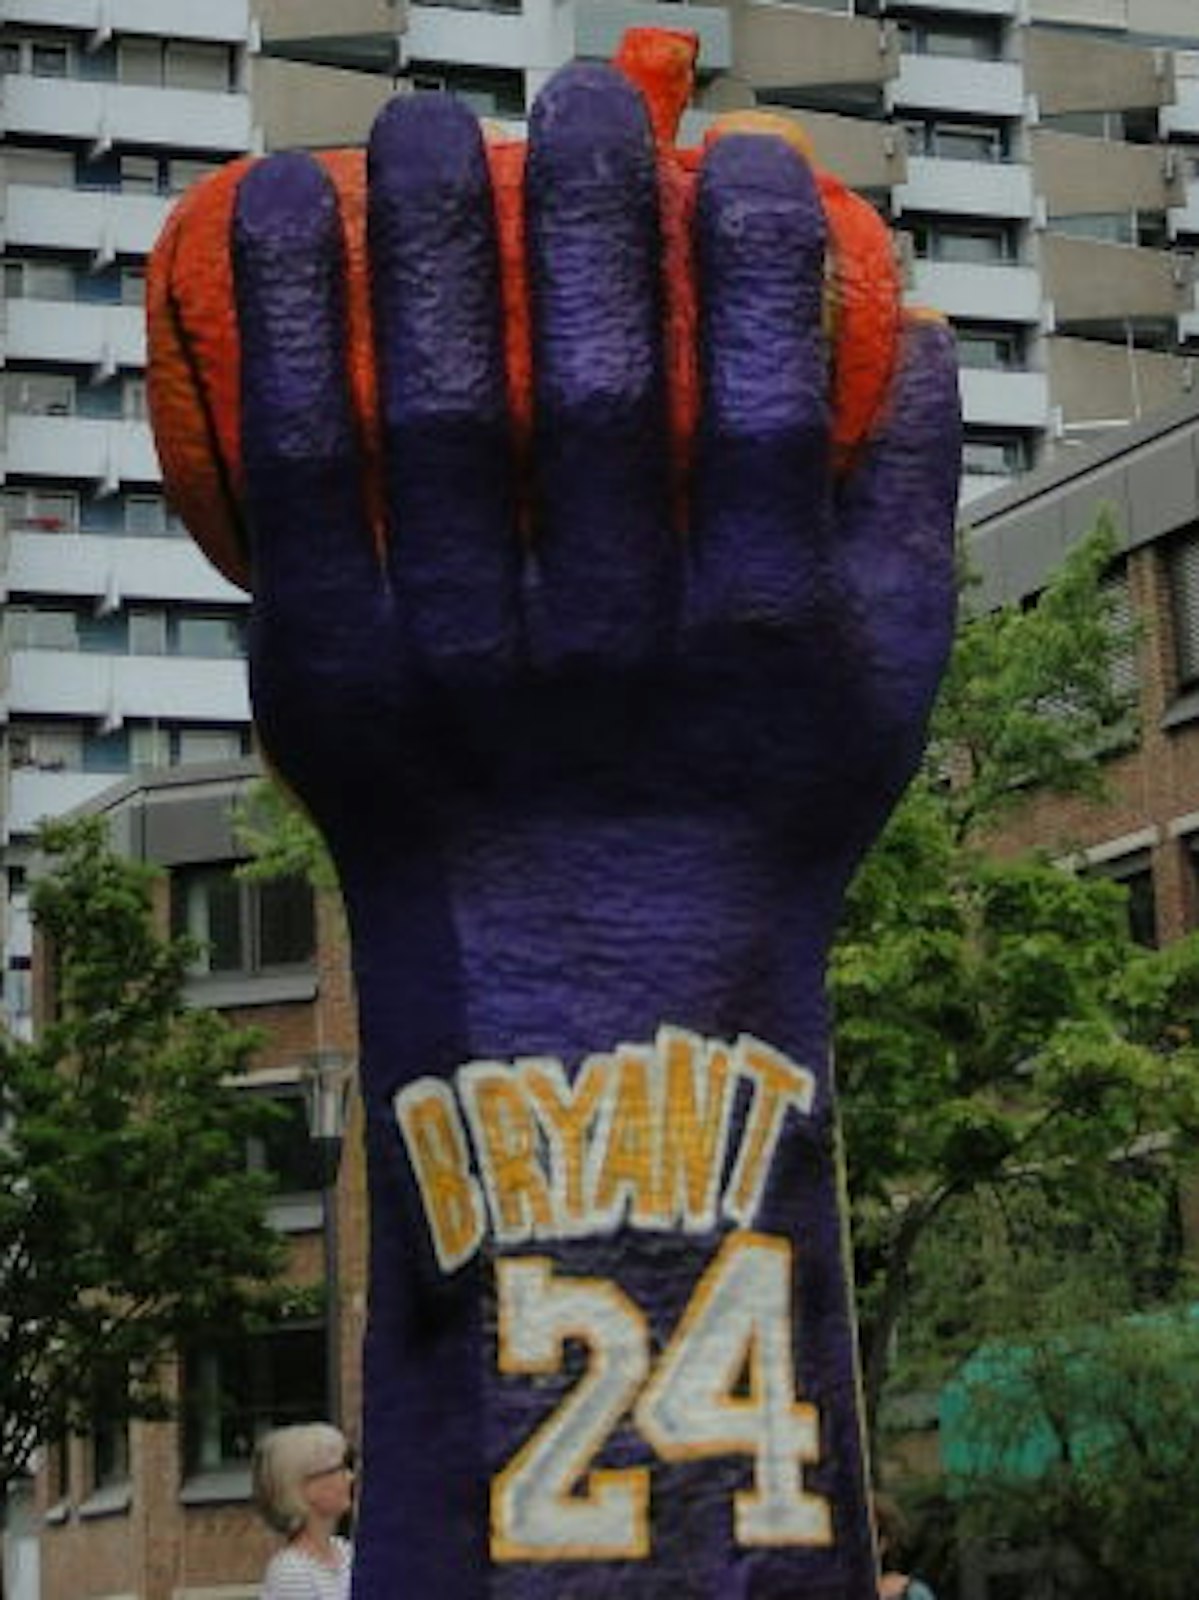 Die Gestaltung soll an den Basketballer Kobe Bryant erinnern.